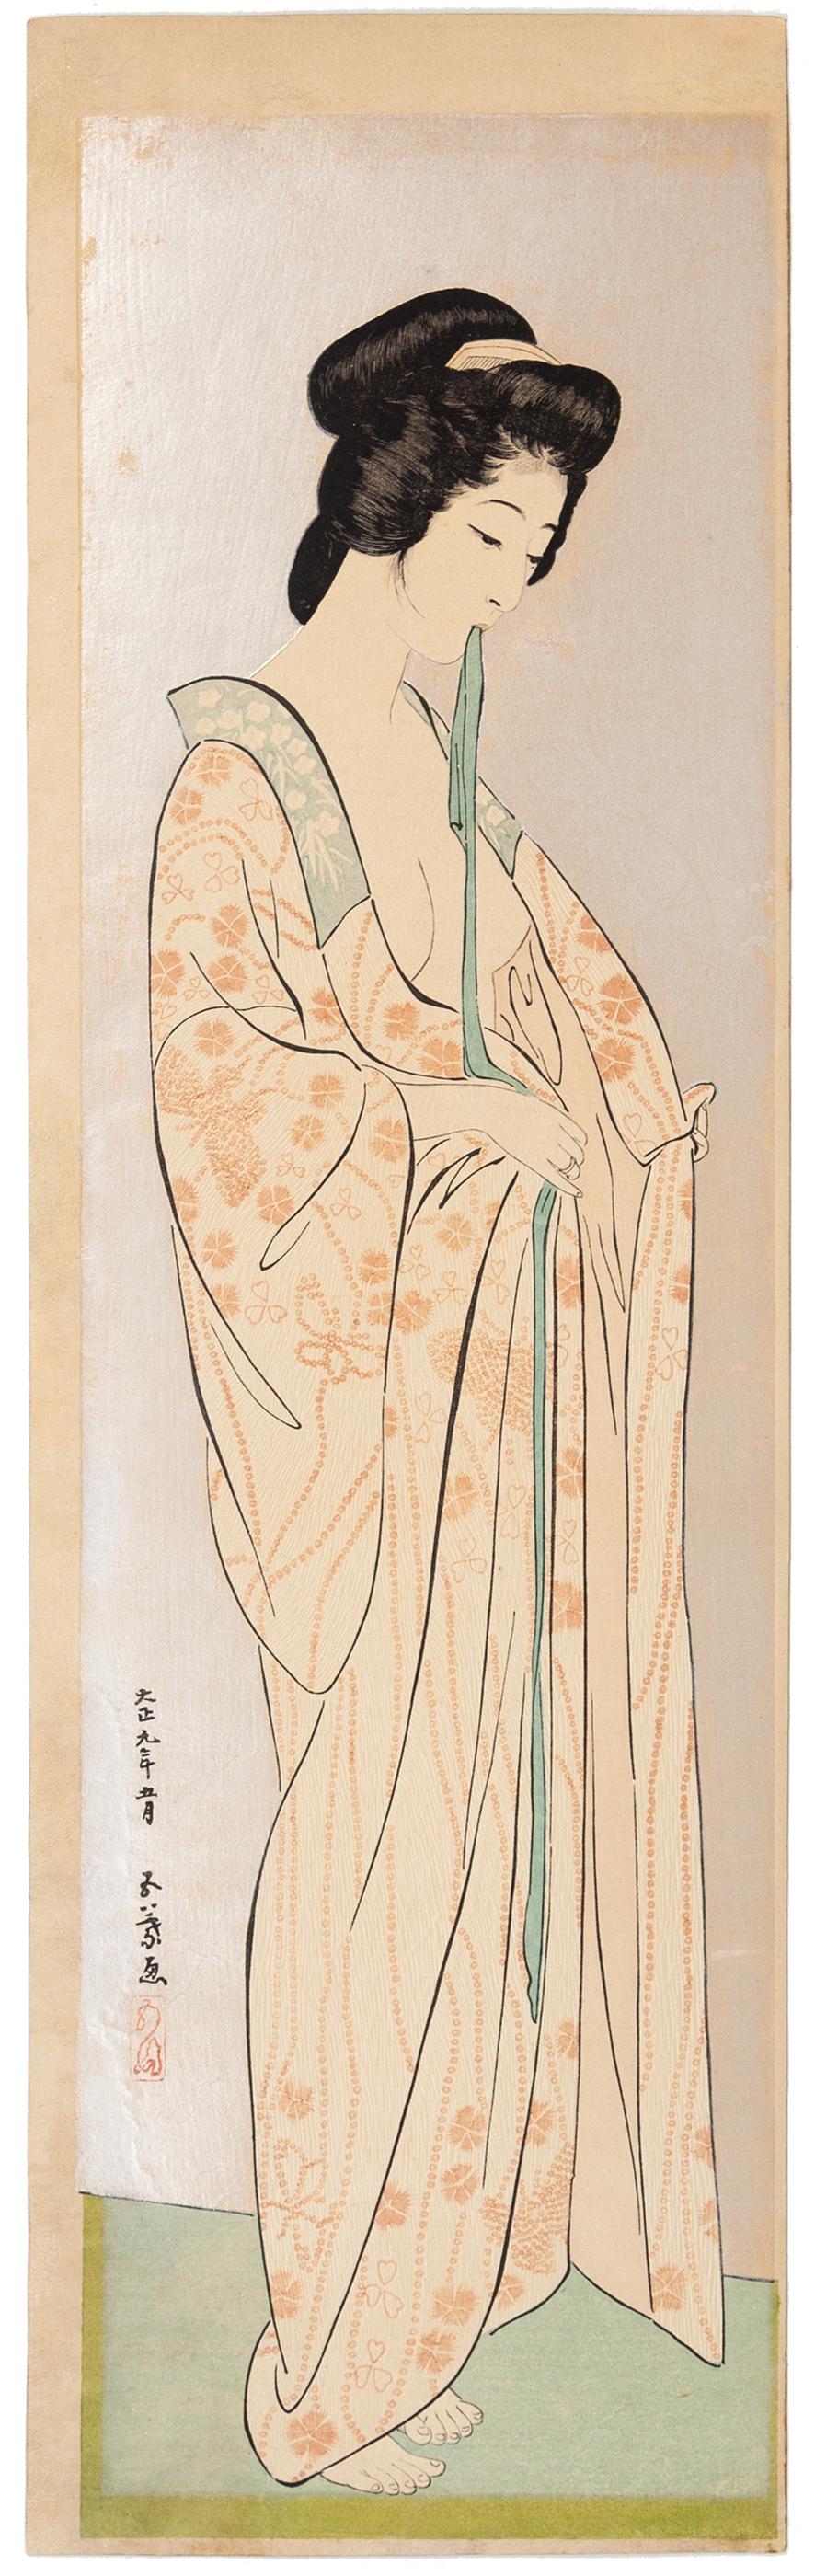 Hashiguchi Goyo Figurative Print - Goyo Hashiguchi, Shin Hanga, Original Japanese Woodblock Print, Beauty, Kimono